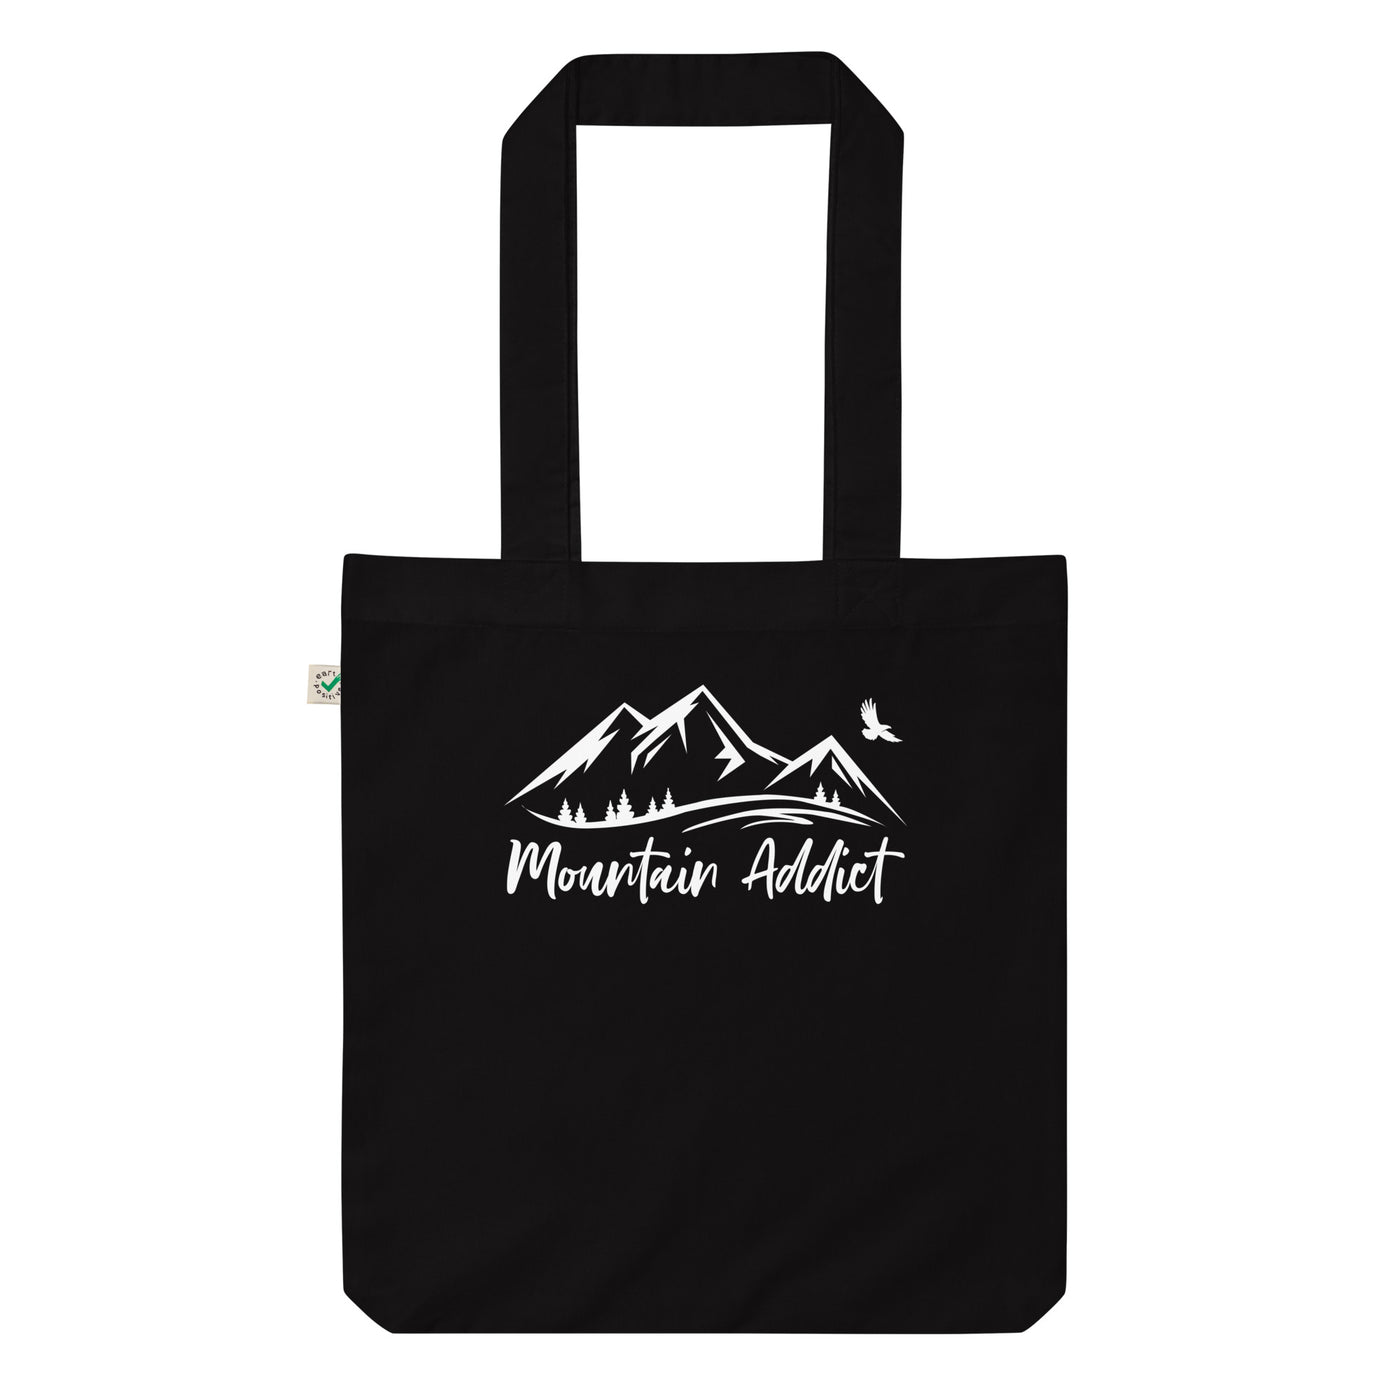 Bergsüchtiger - Organic Einkaufstasche berge Black